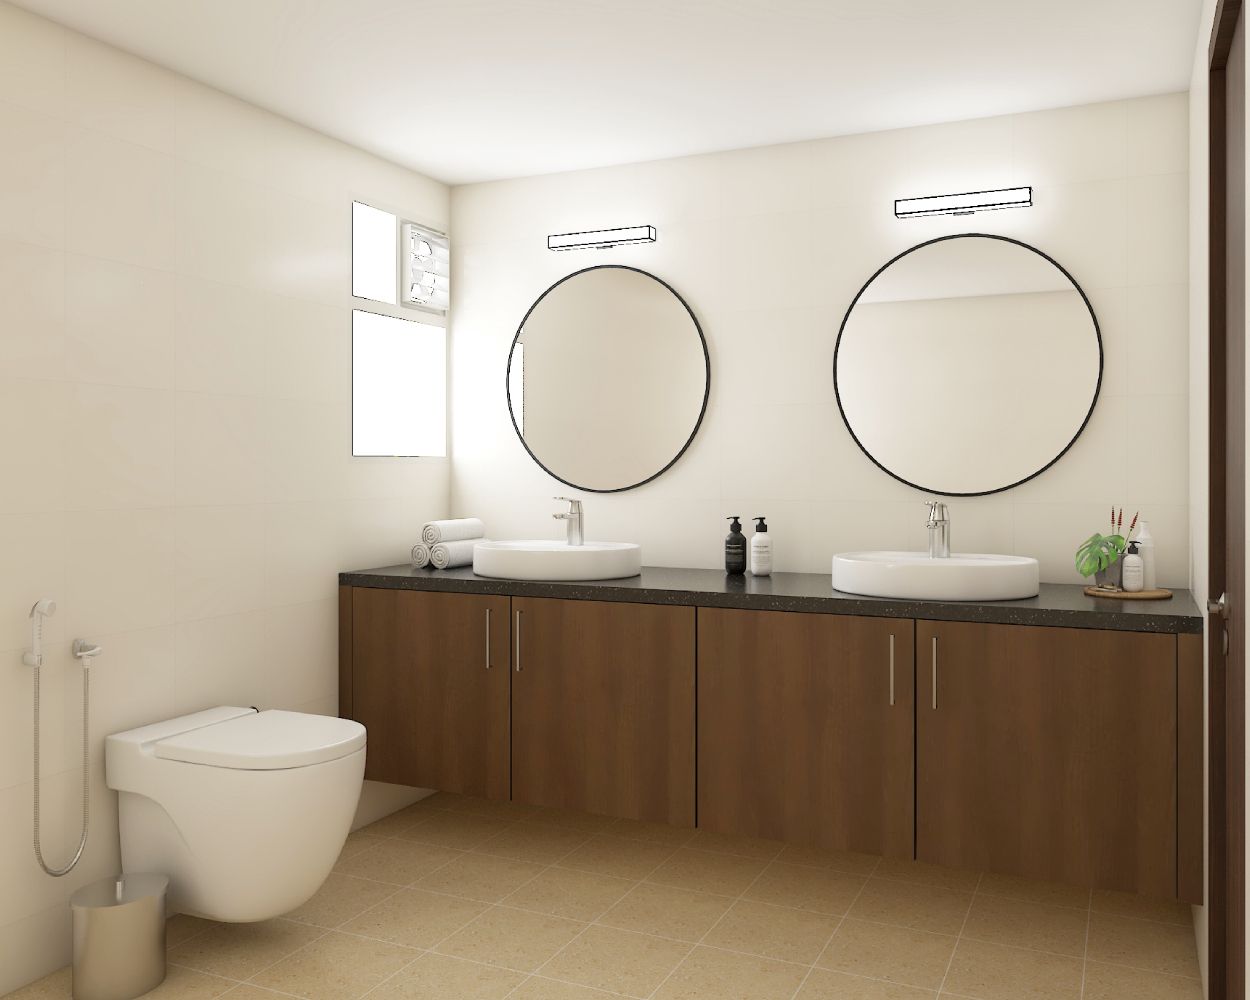 Minimal White Bathroom Design With 4-Door Wooden Bathroom Cabinet